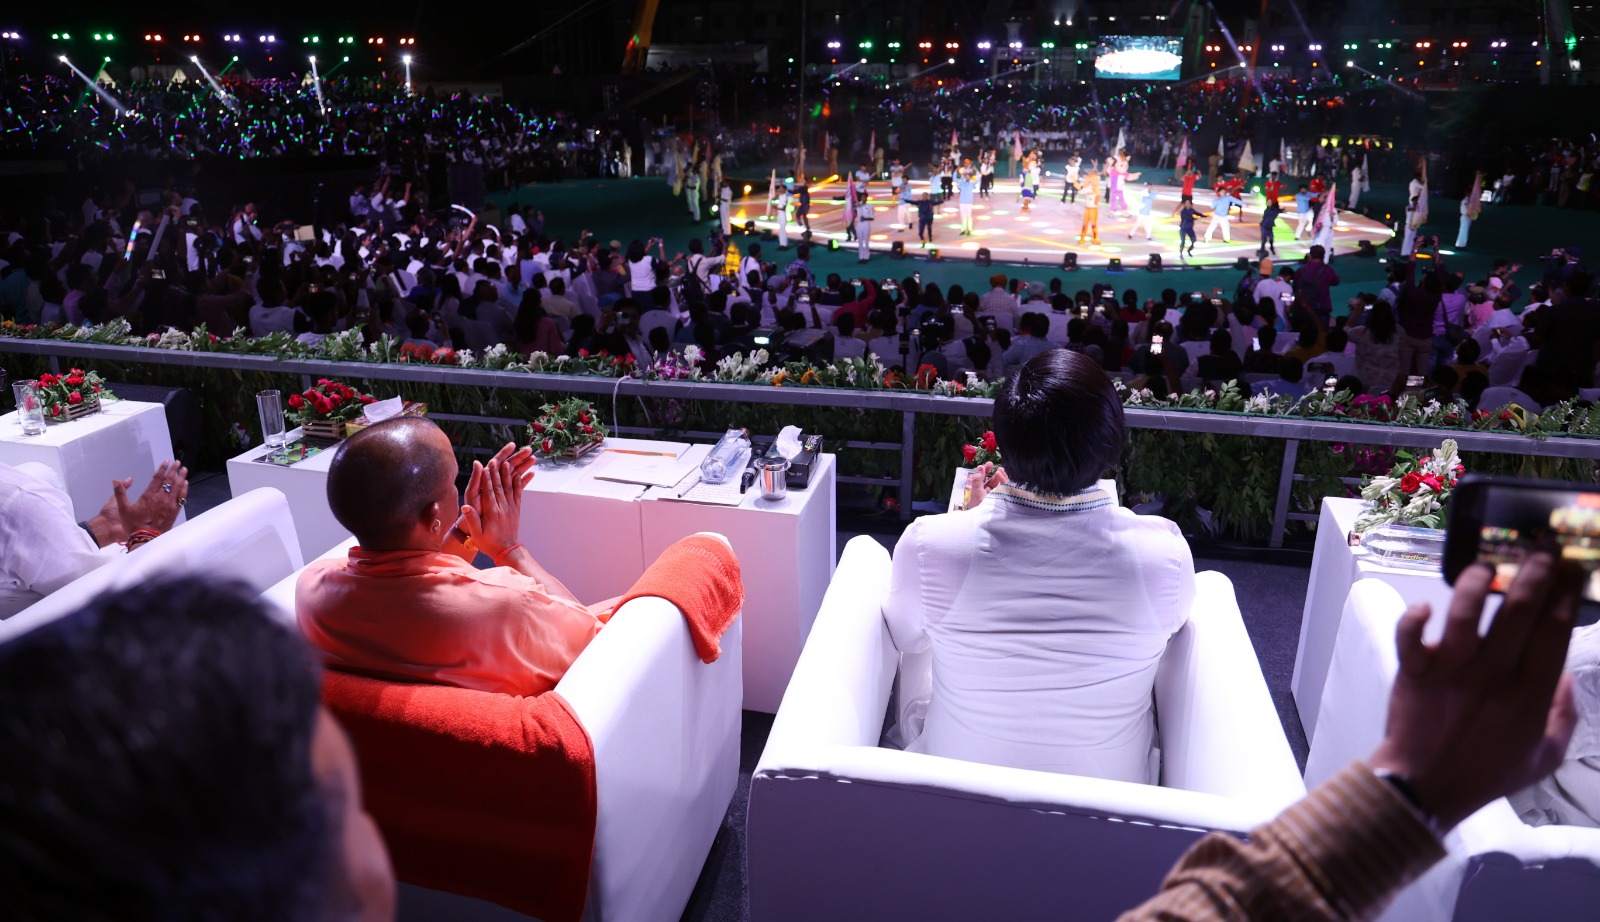 प्रधानमंत्री नरेंद्र मोदी ने वीडियो कॉन्फ्रेंसिंग के माध्यम से किया उत्तर प्रदेश में खेलो इंडिया यूनिवर्सिटी गेम्स का शुभारंभ